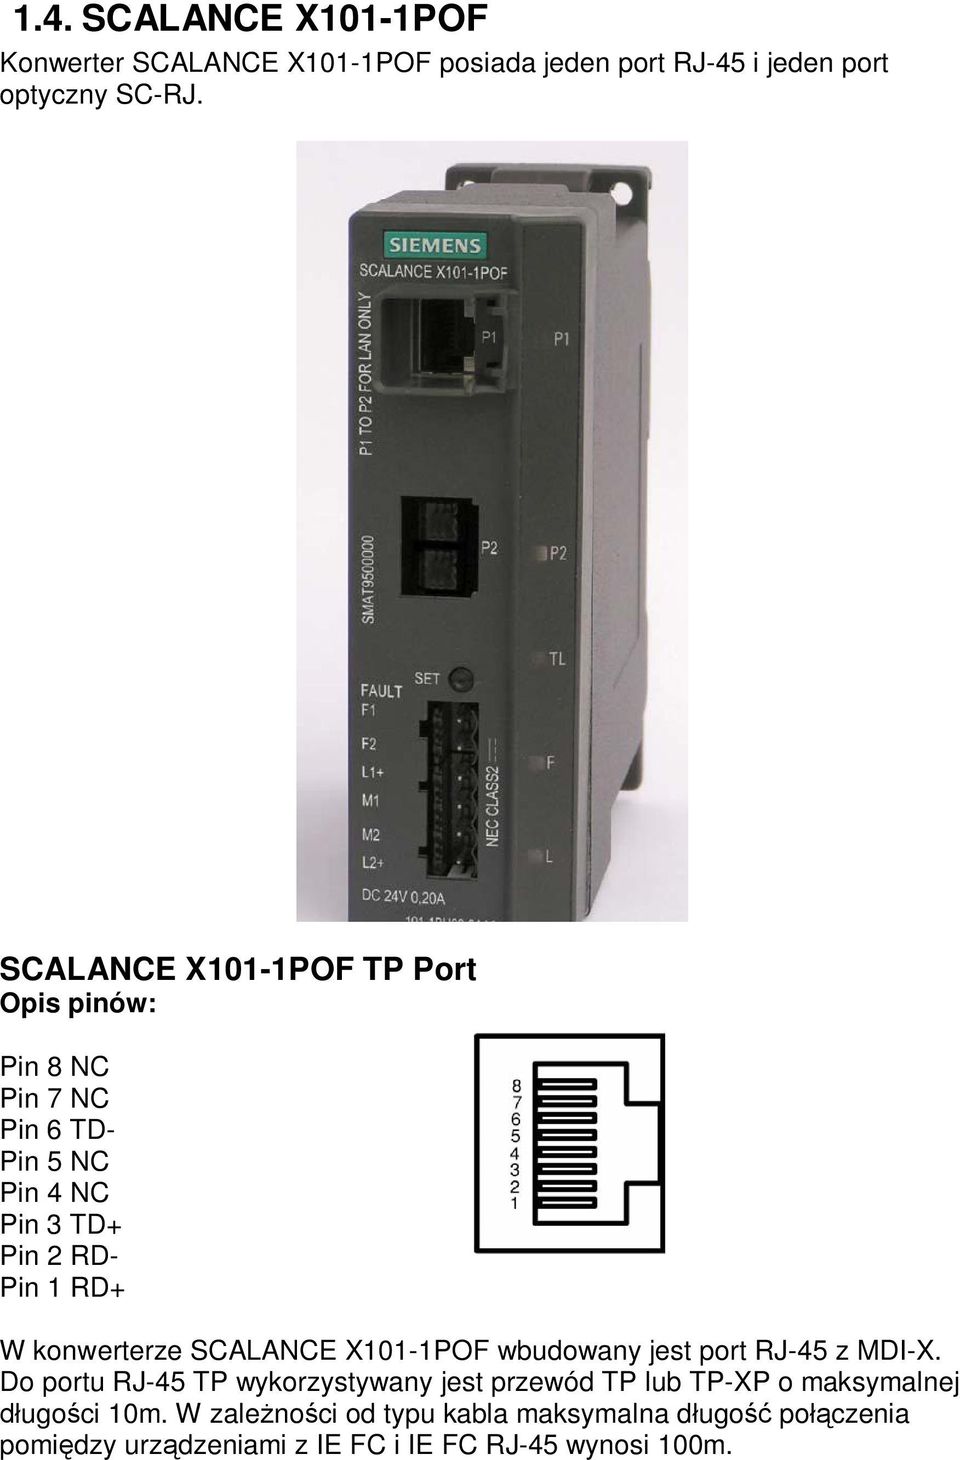 SCALANCE X101-1POF wbudowany jest port RJ-45 z MDI-X.